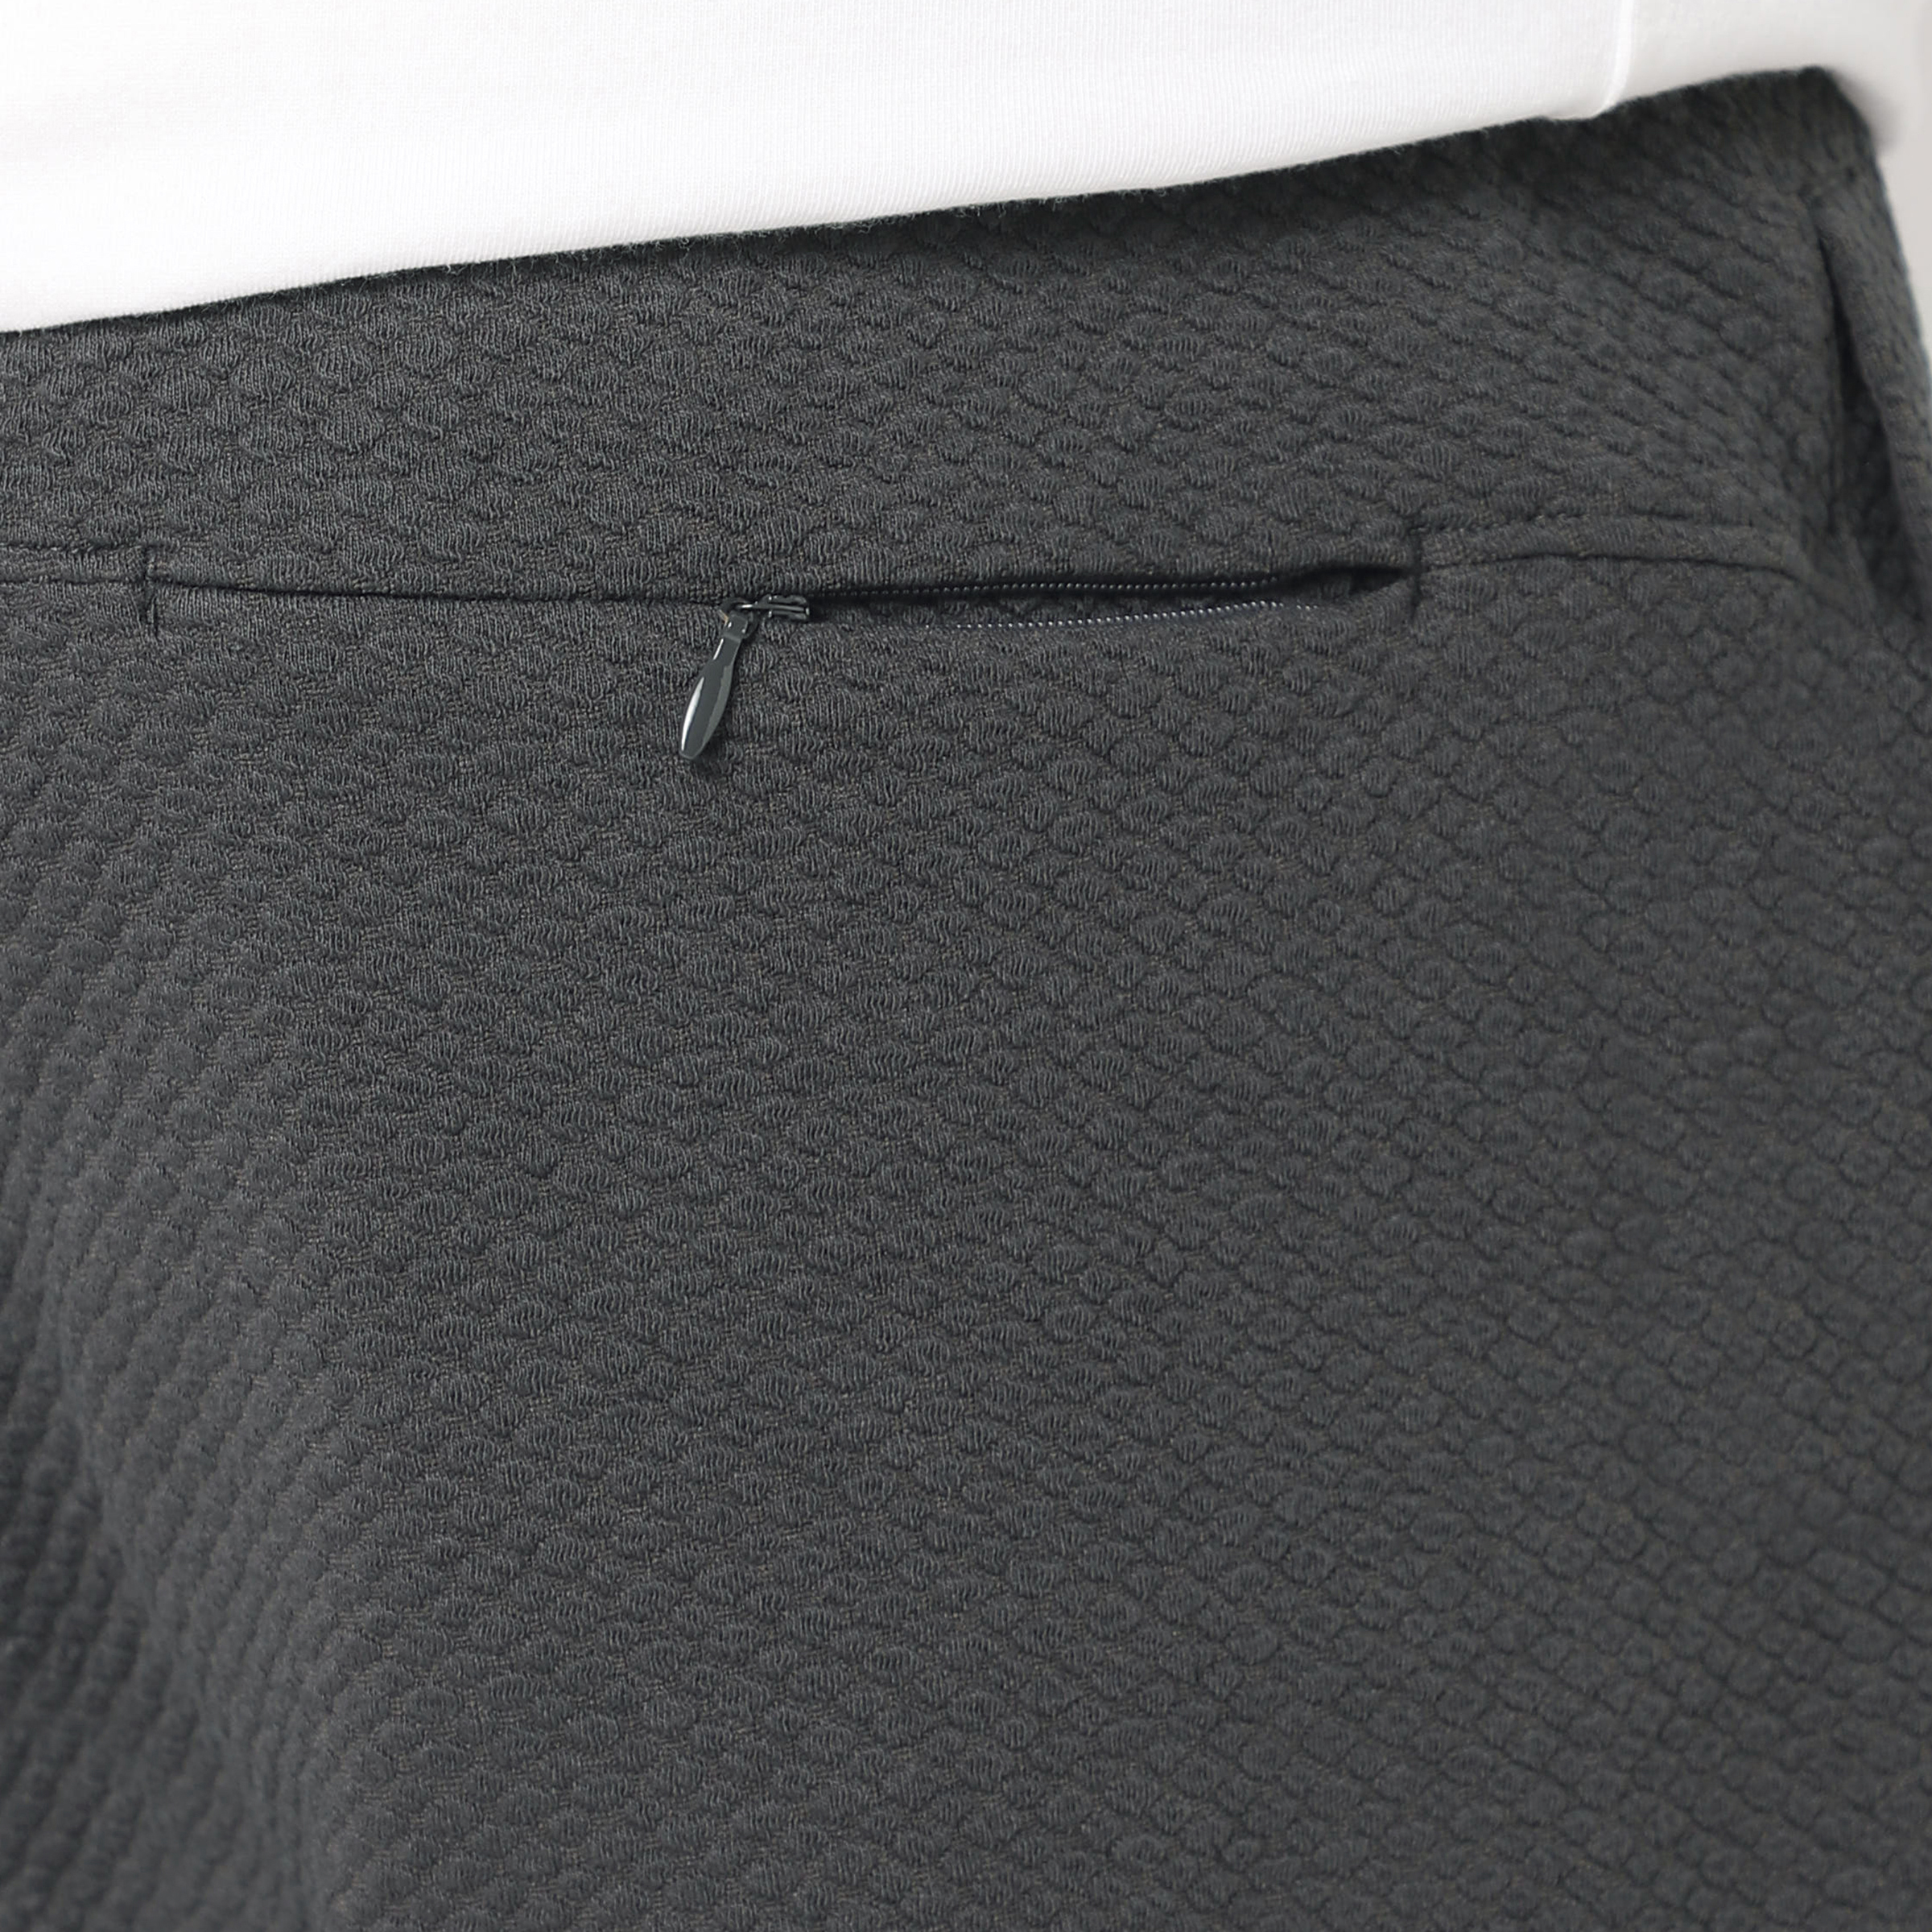 Roam Jogger Coal close up of back zipper pocket